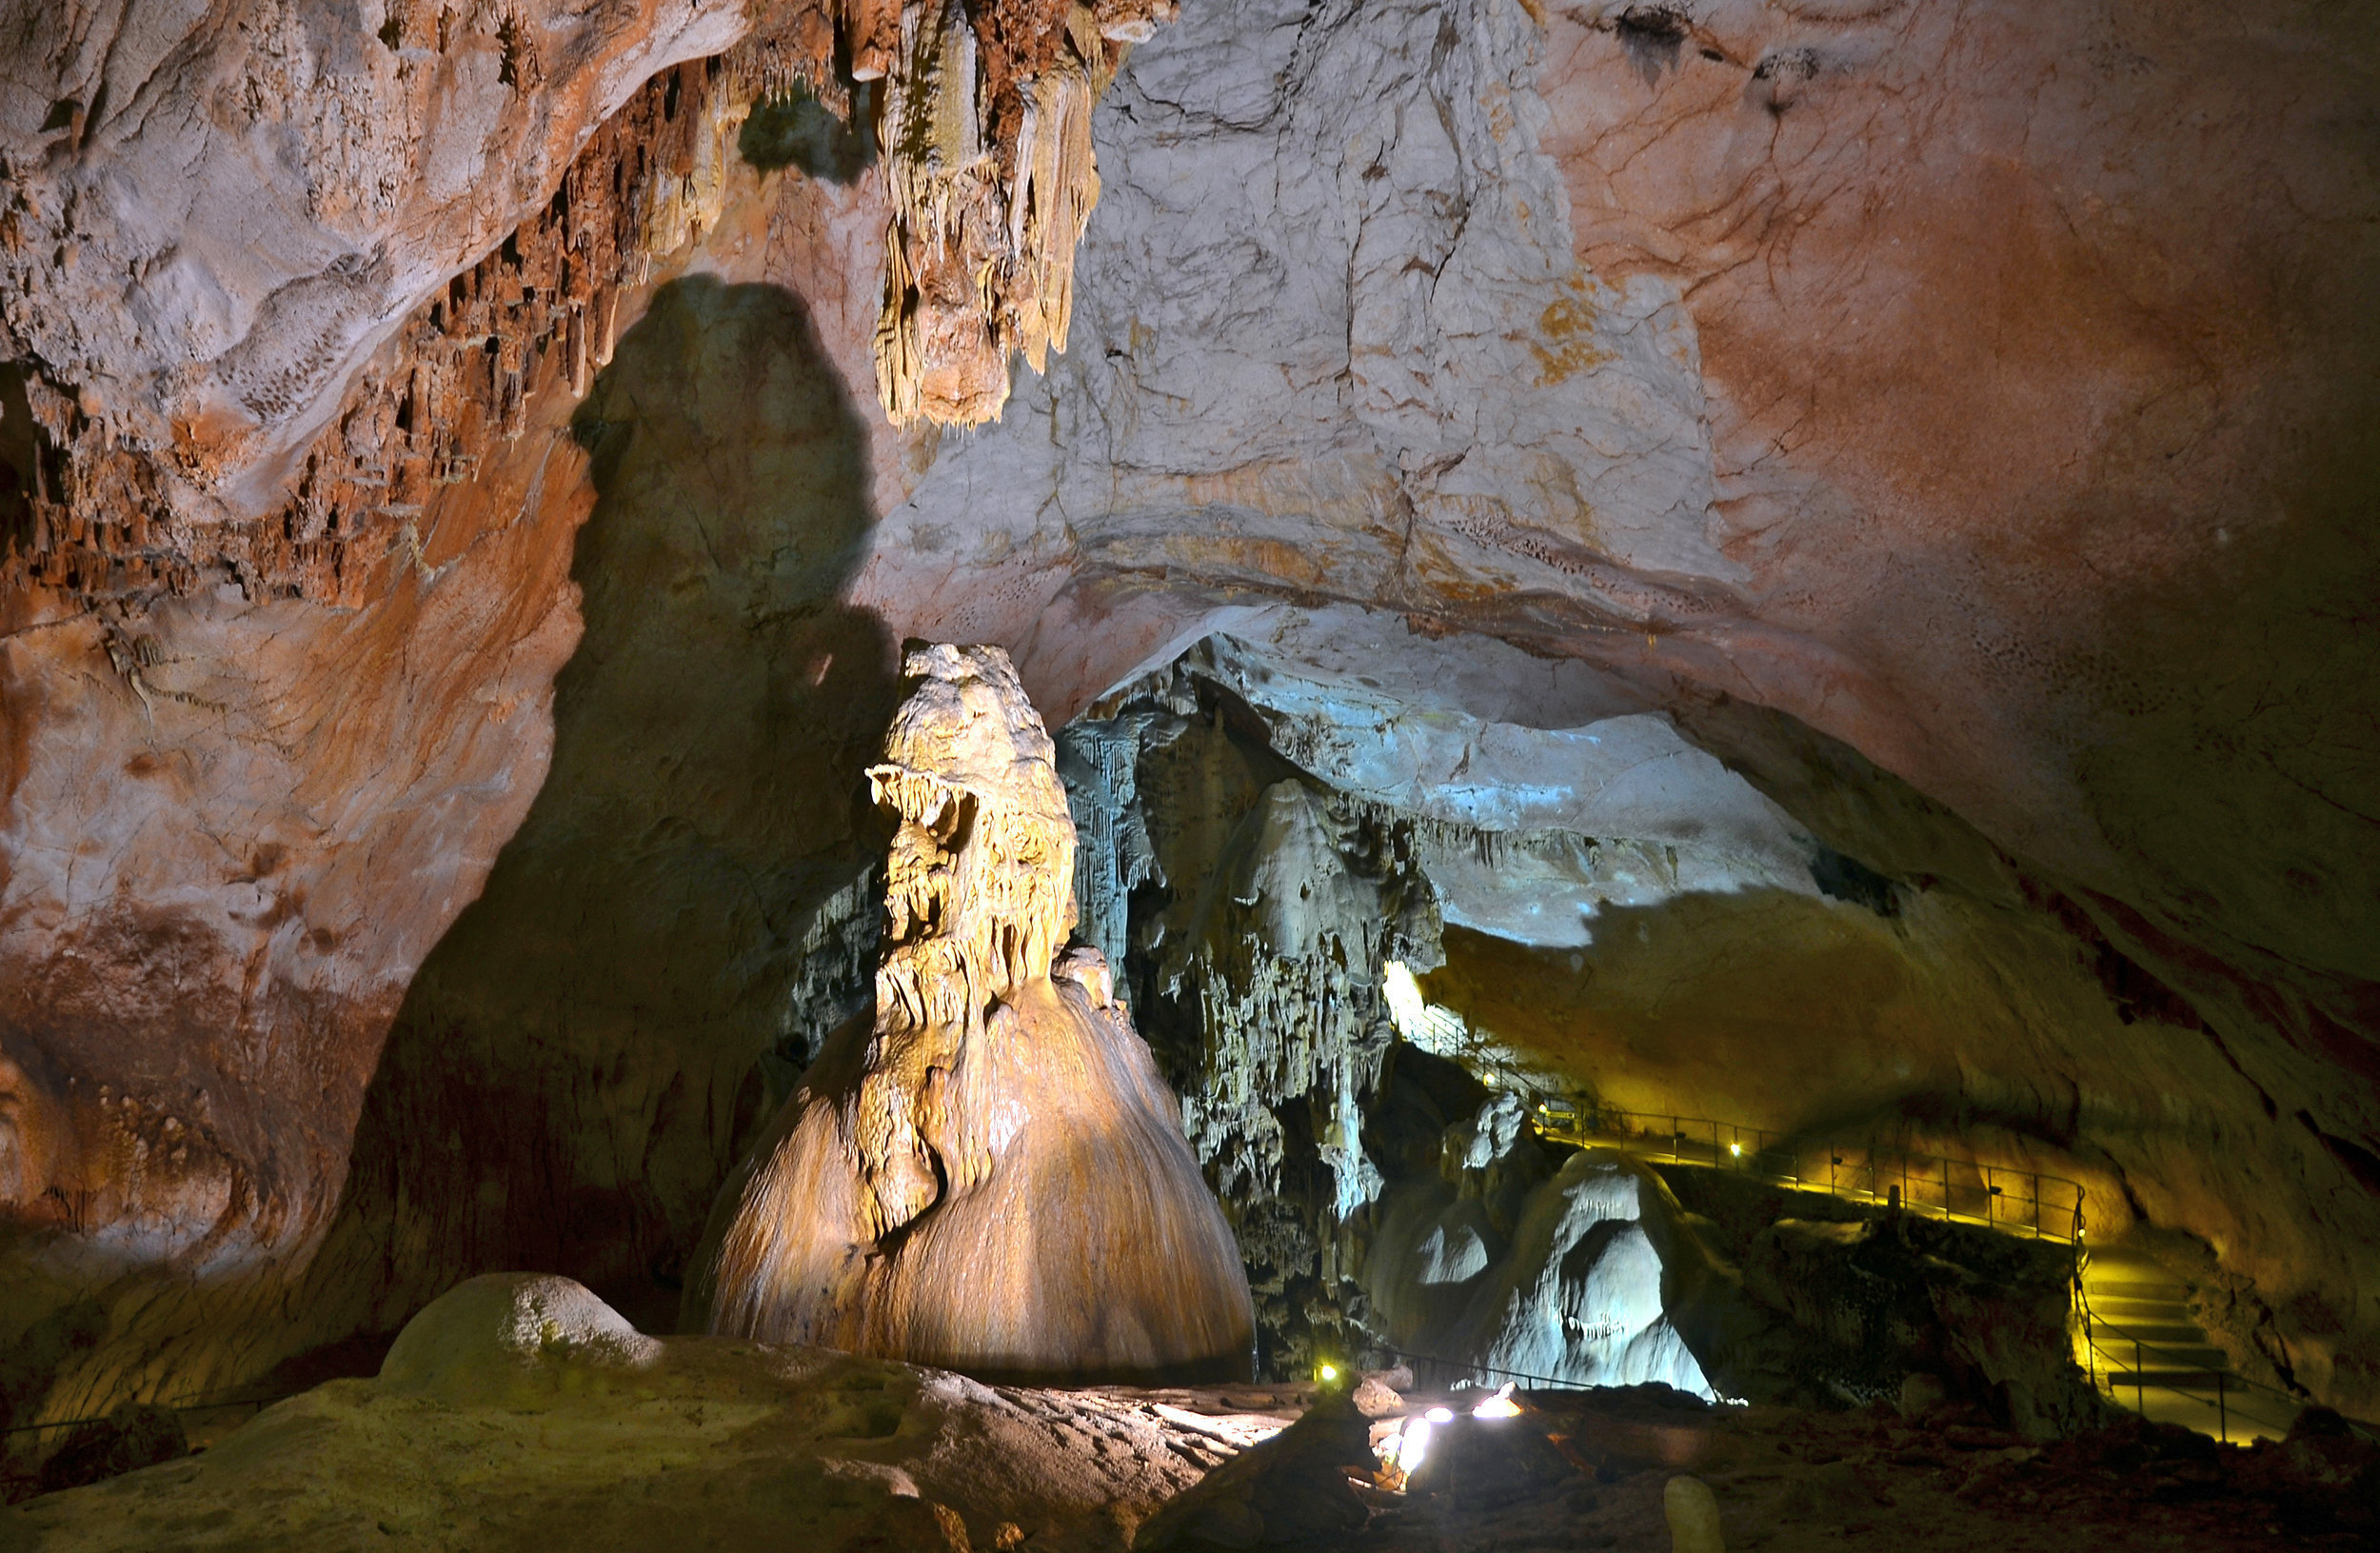  Cave Emine-Bair-Khosar 